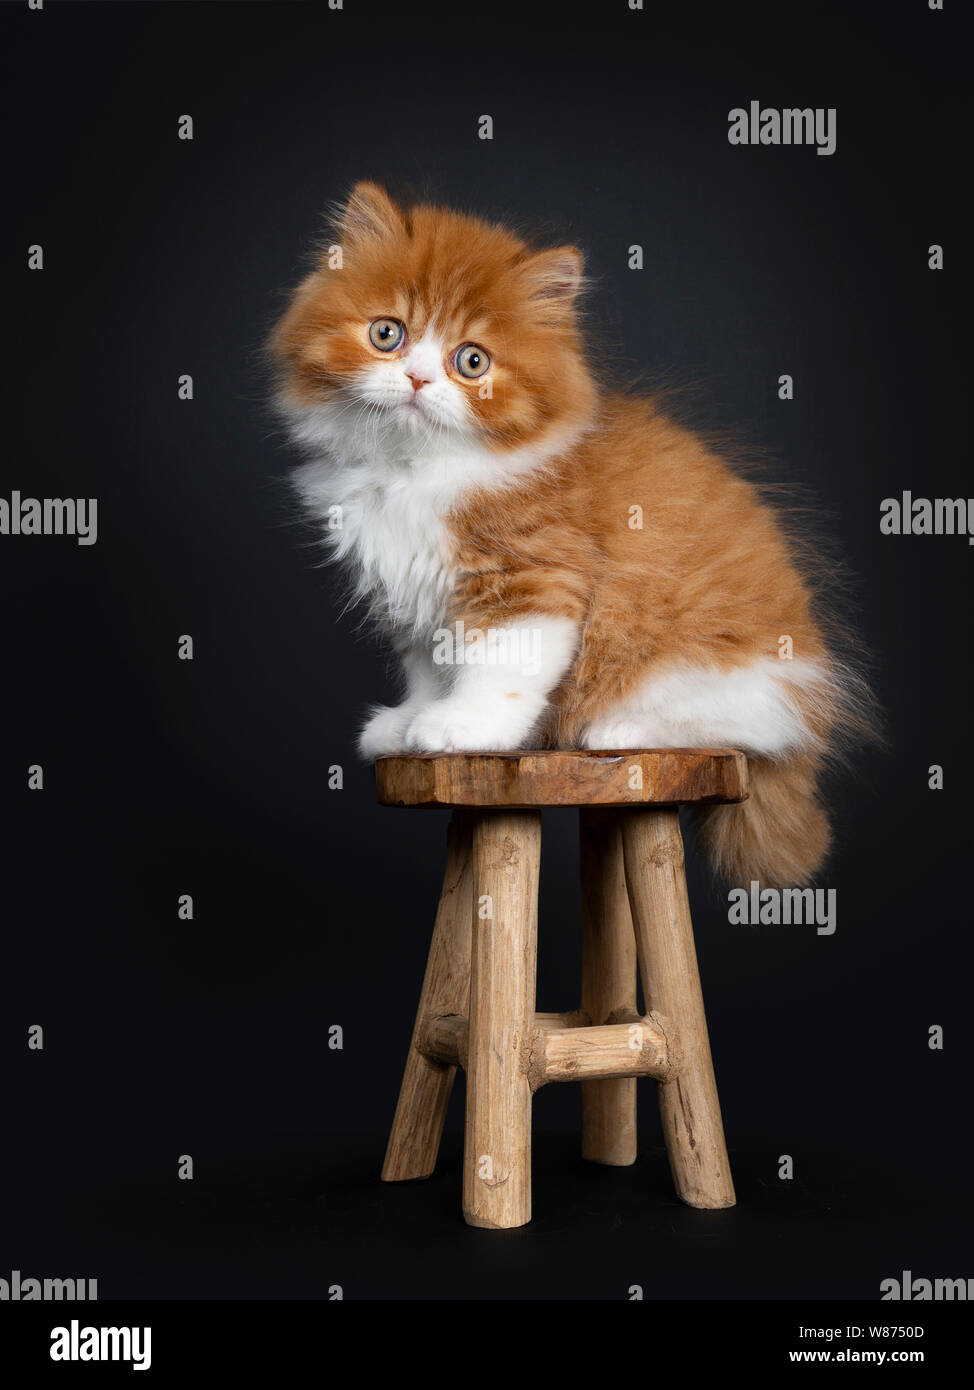 Adorable rojo con blanco British Longhair cat kitten, sentados codo formas de taburete de madera. Mirando a la cámara con grandes ojos redondos. Aislado en la parte posterior negra Foto de stock